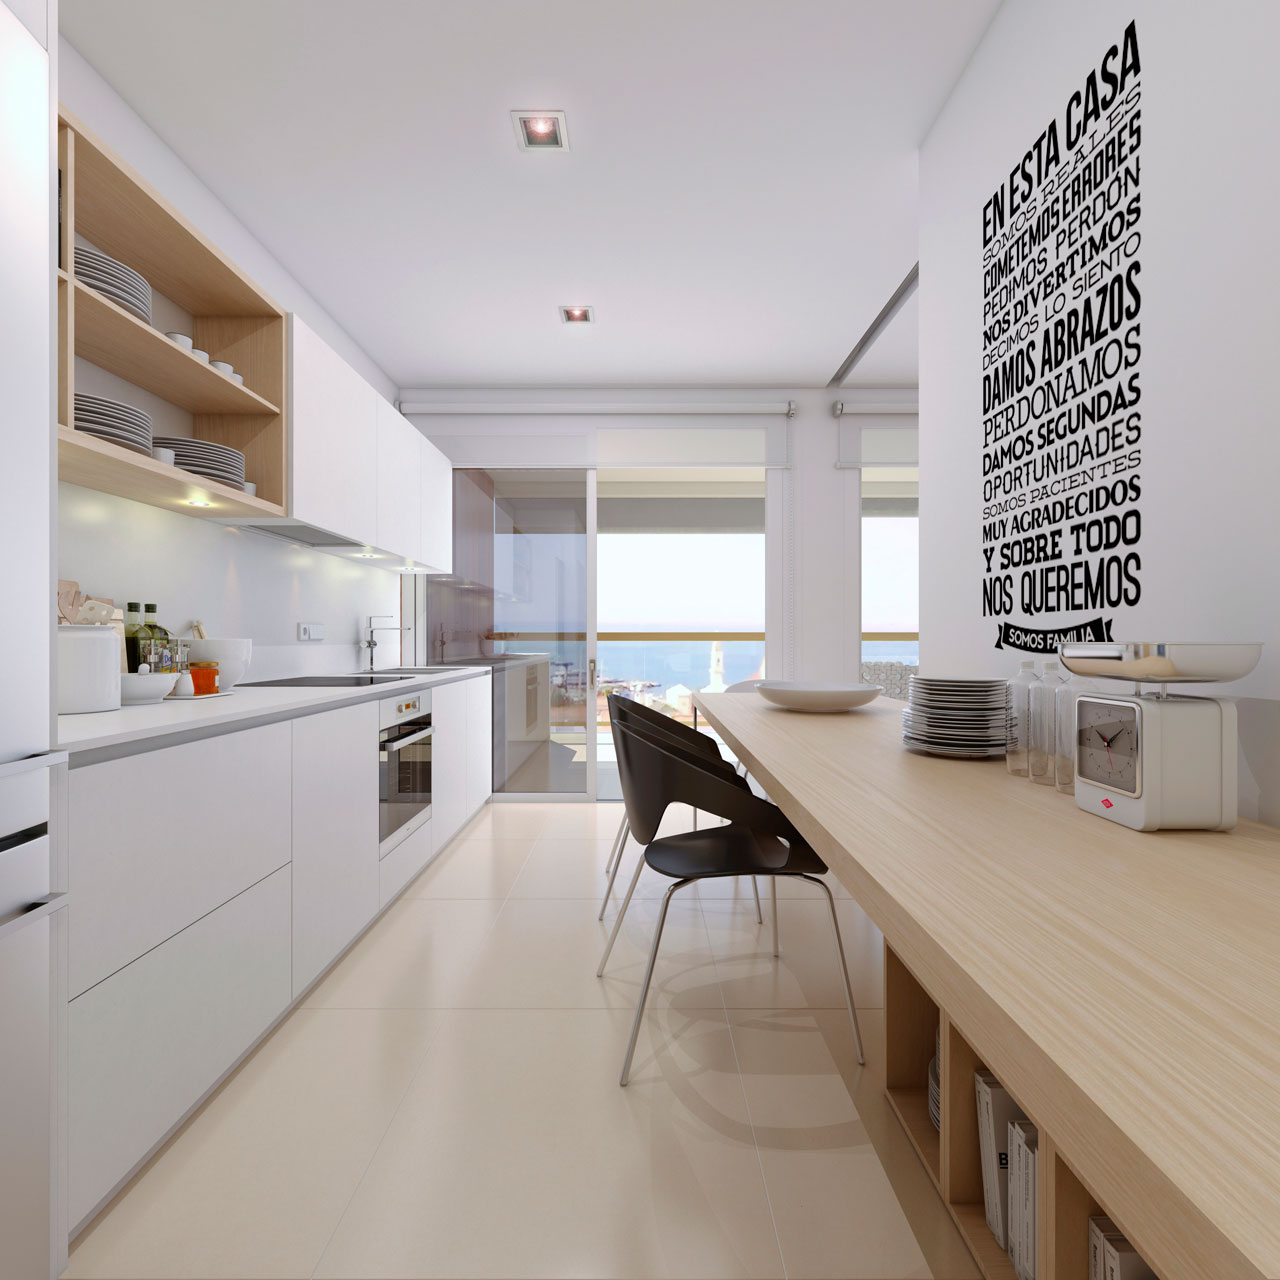 Imagen realizada con infografía 3D para la visualización de la cocina de un edificio turísitico residencial